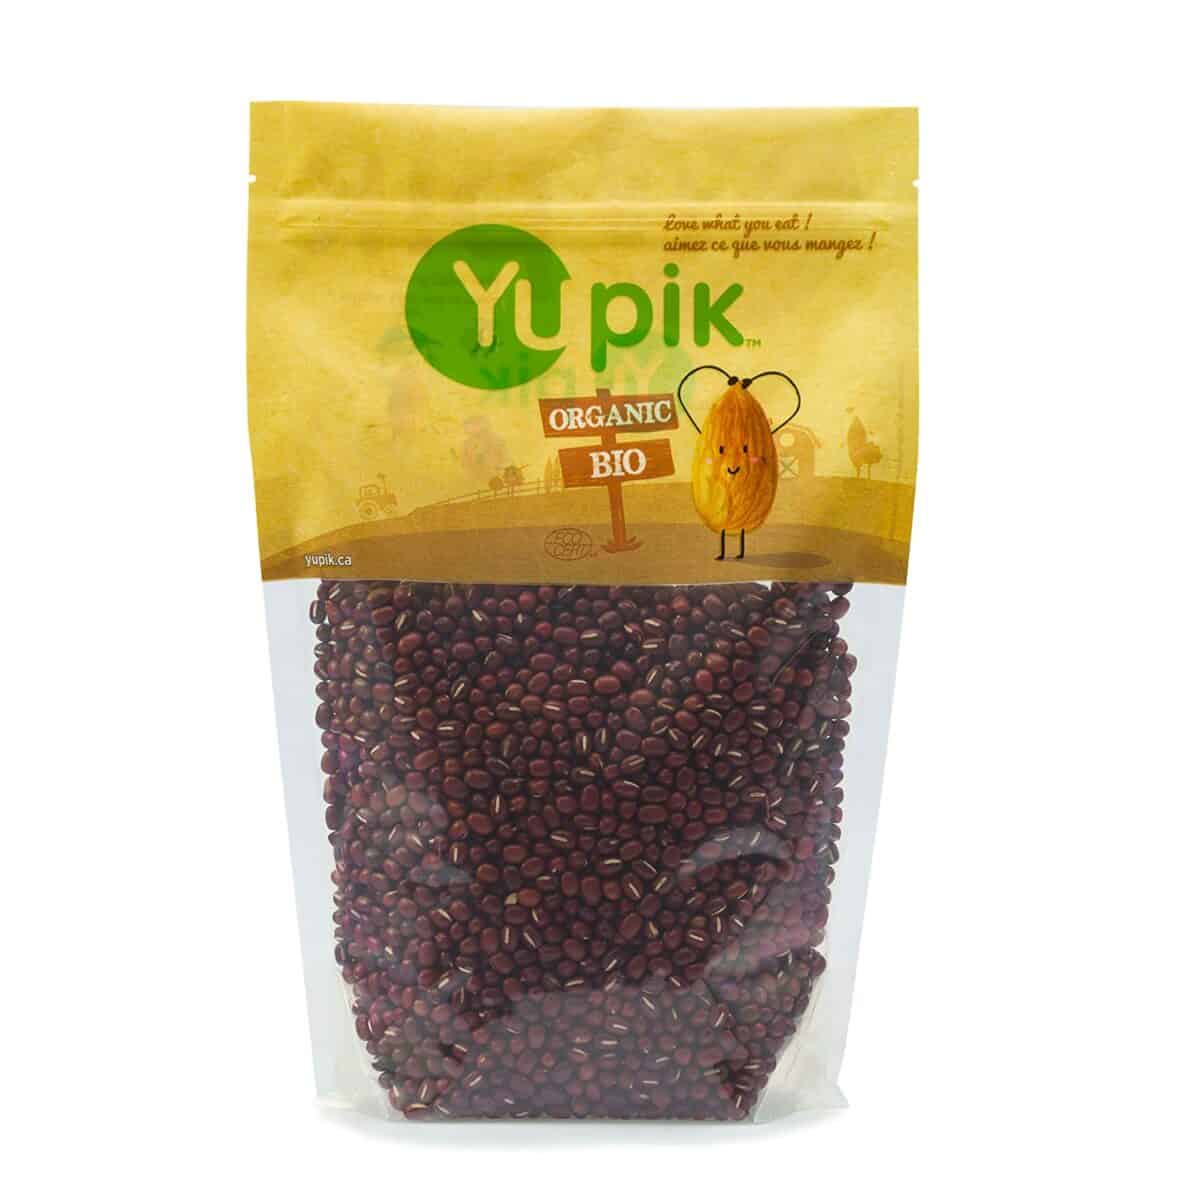 Yupik Organic Adzuki Beans e le sebaka sa linaoa tsa mung